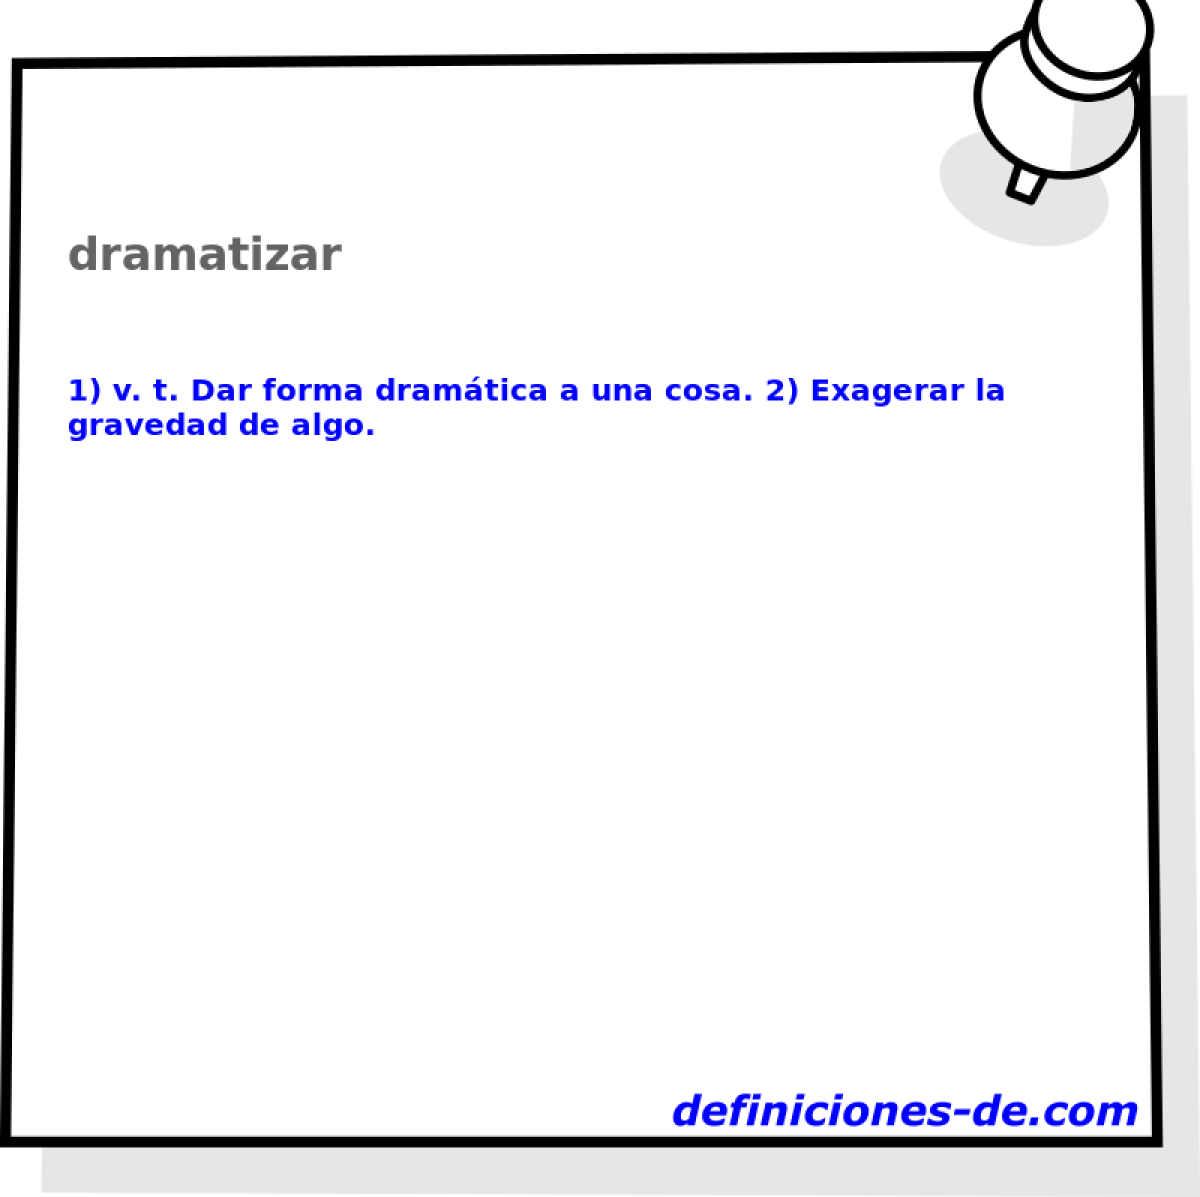 dramatizar 